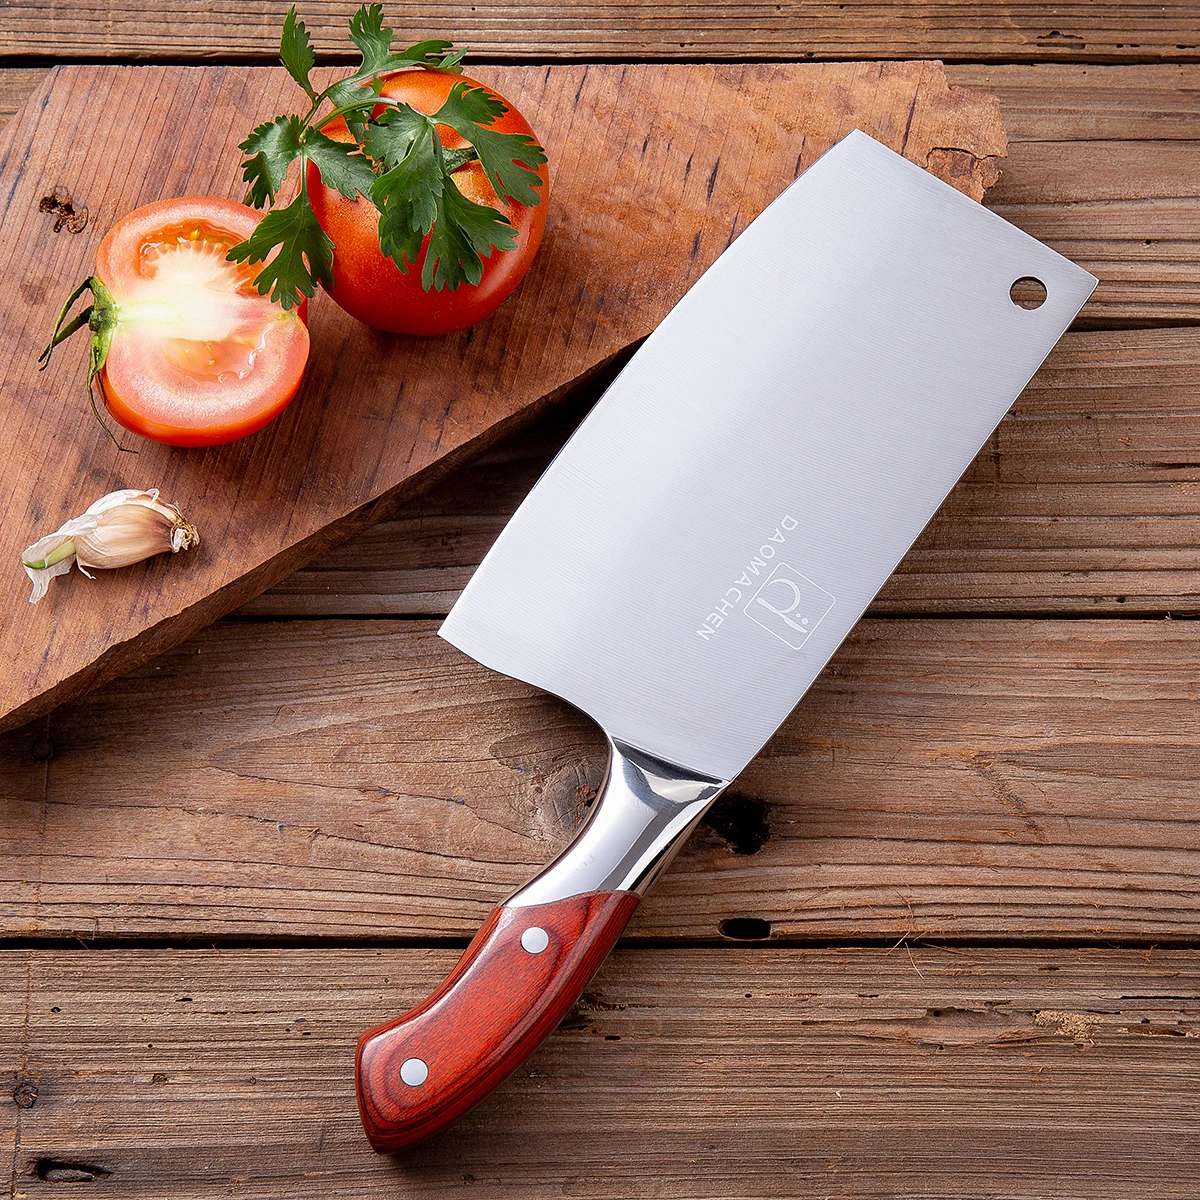 DAOMACHEN кухонный нож из нержавеющей стали, профессиональный разделочный нож, китайский нож, кухонный нож шеф-повара